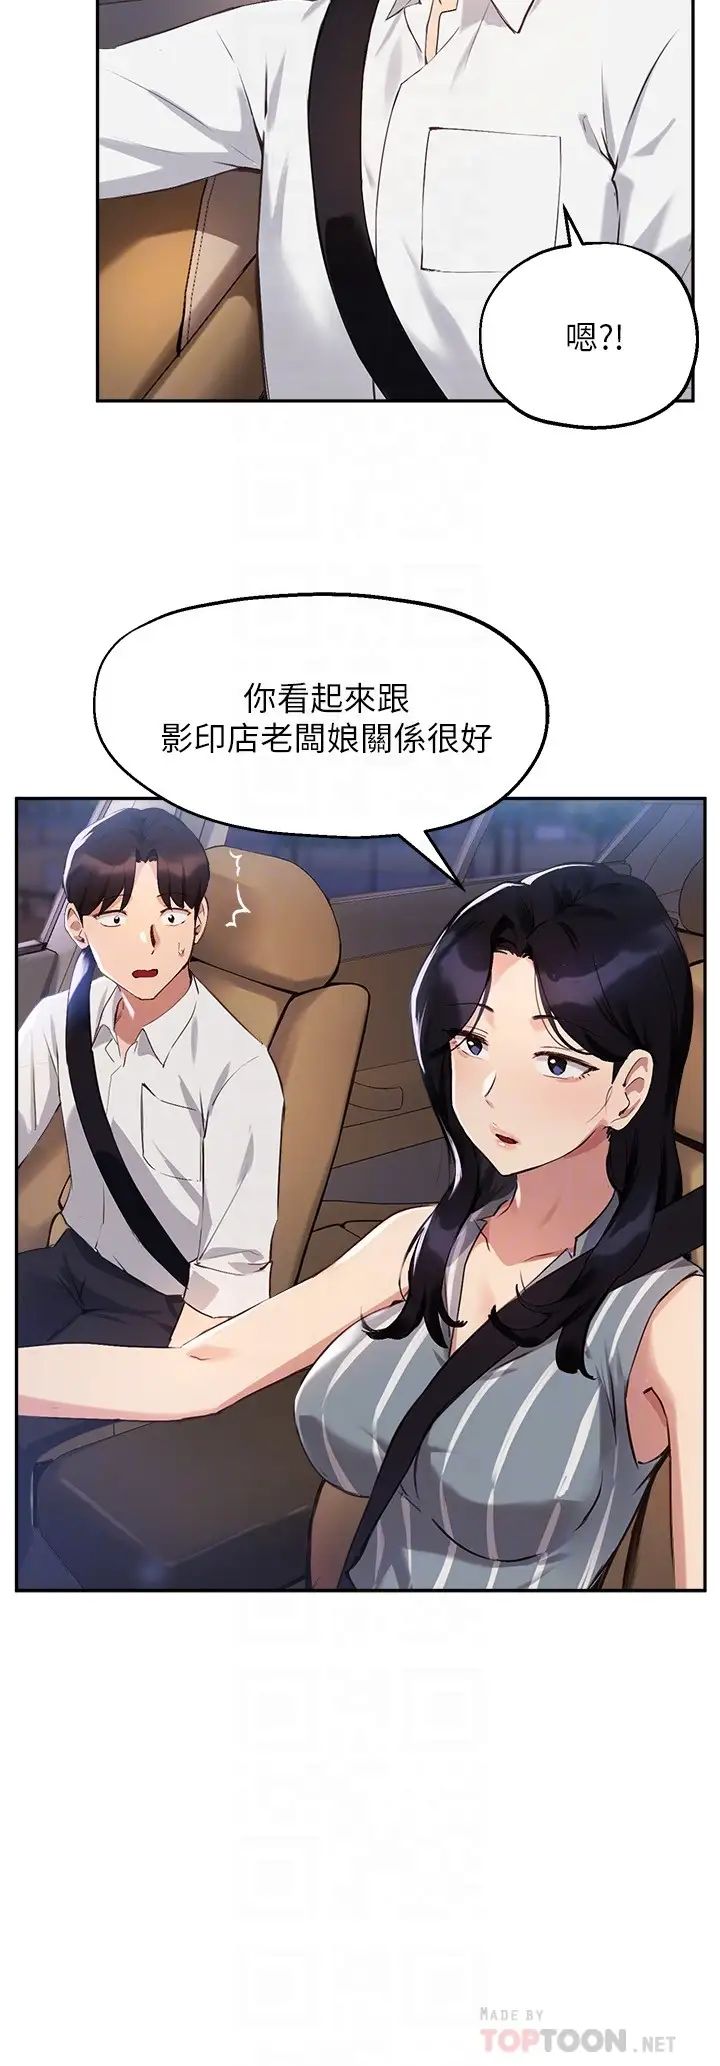 韩国污漫画 指導女大生 第29话隐密包厢内的诱惑 8